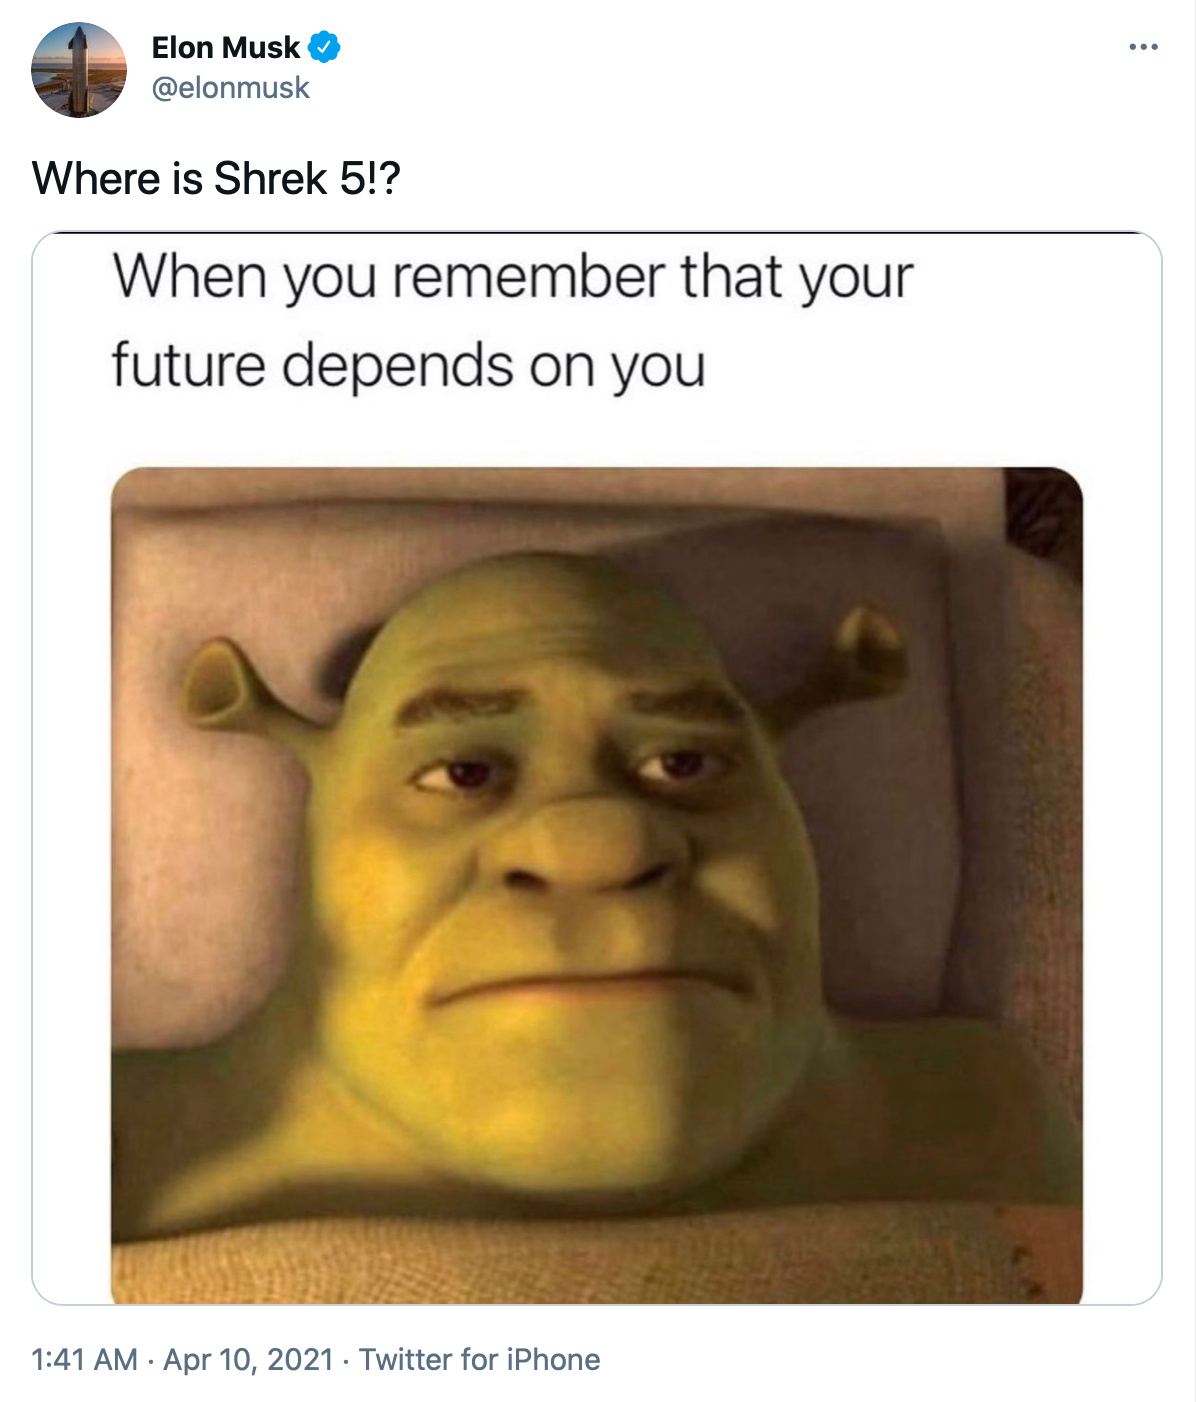 Elon Musk quiere que salga Shrek 5 aparte de dominar el mundo - meme